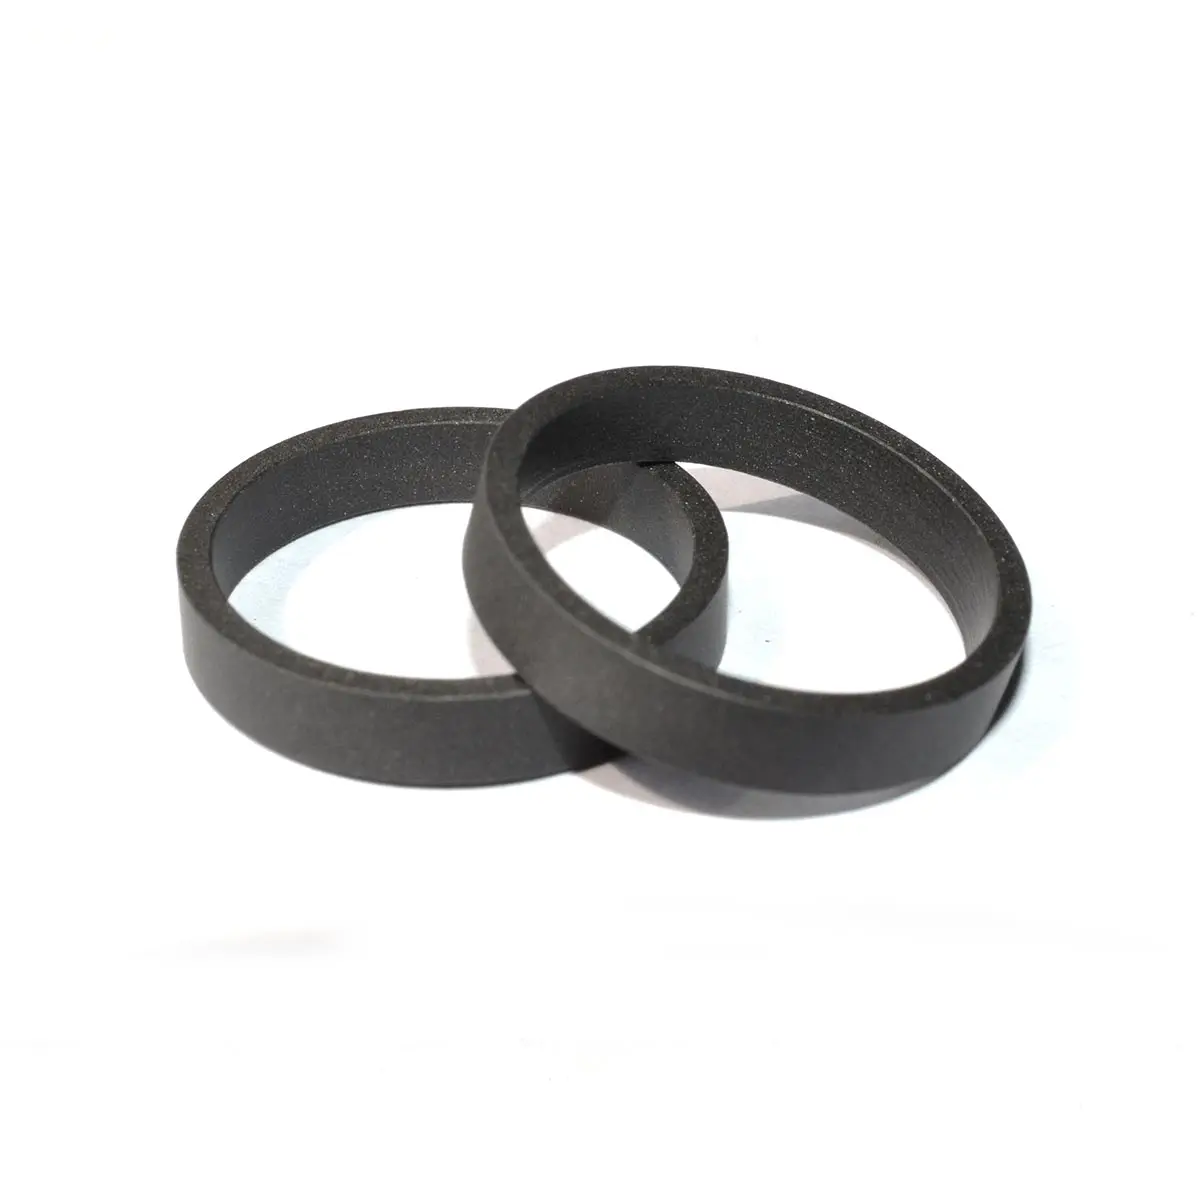 Hydraulic Piston Seal Rubber Wear Ring - Buy Rubber Wear Ring,Piston ...